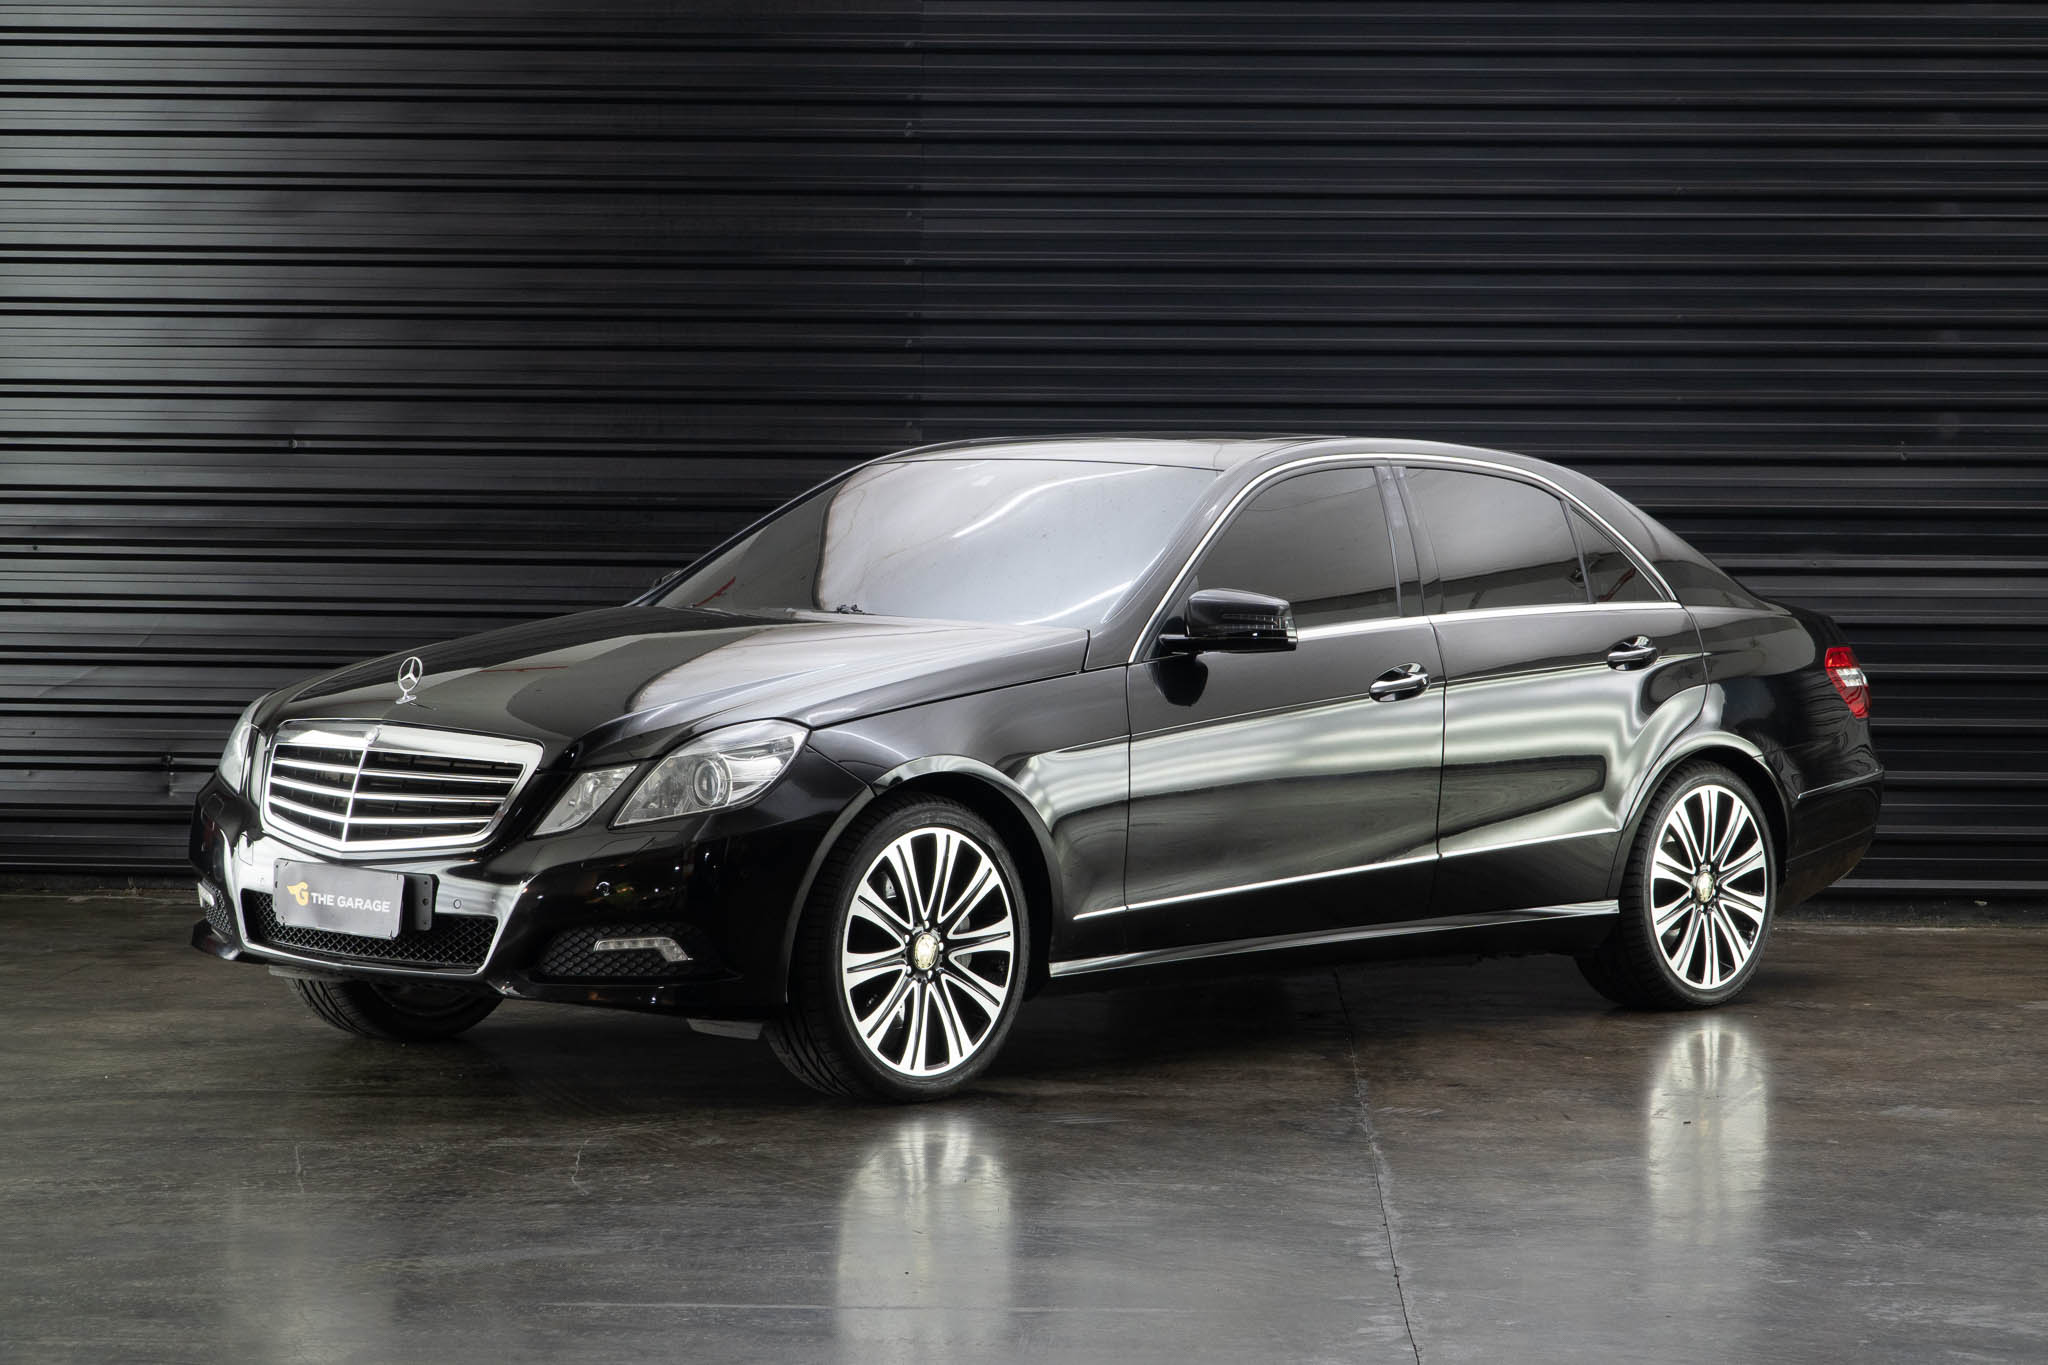 2010-Mercedes-Benz-E500-Avantgarde-Executive-venda-the-garage-for-sale--25